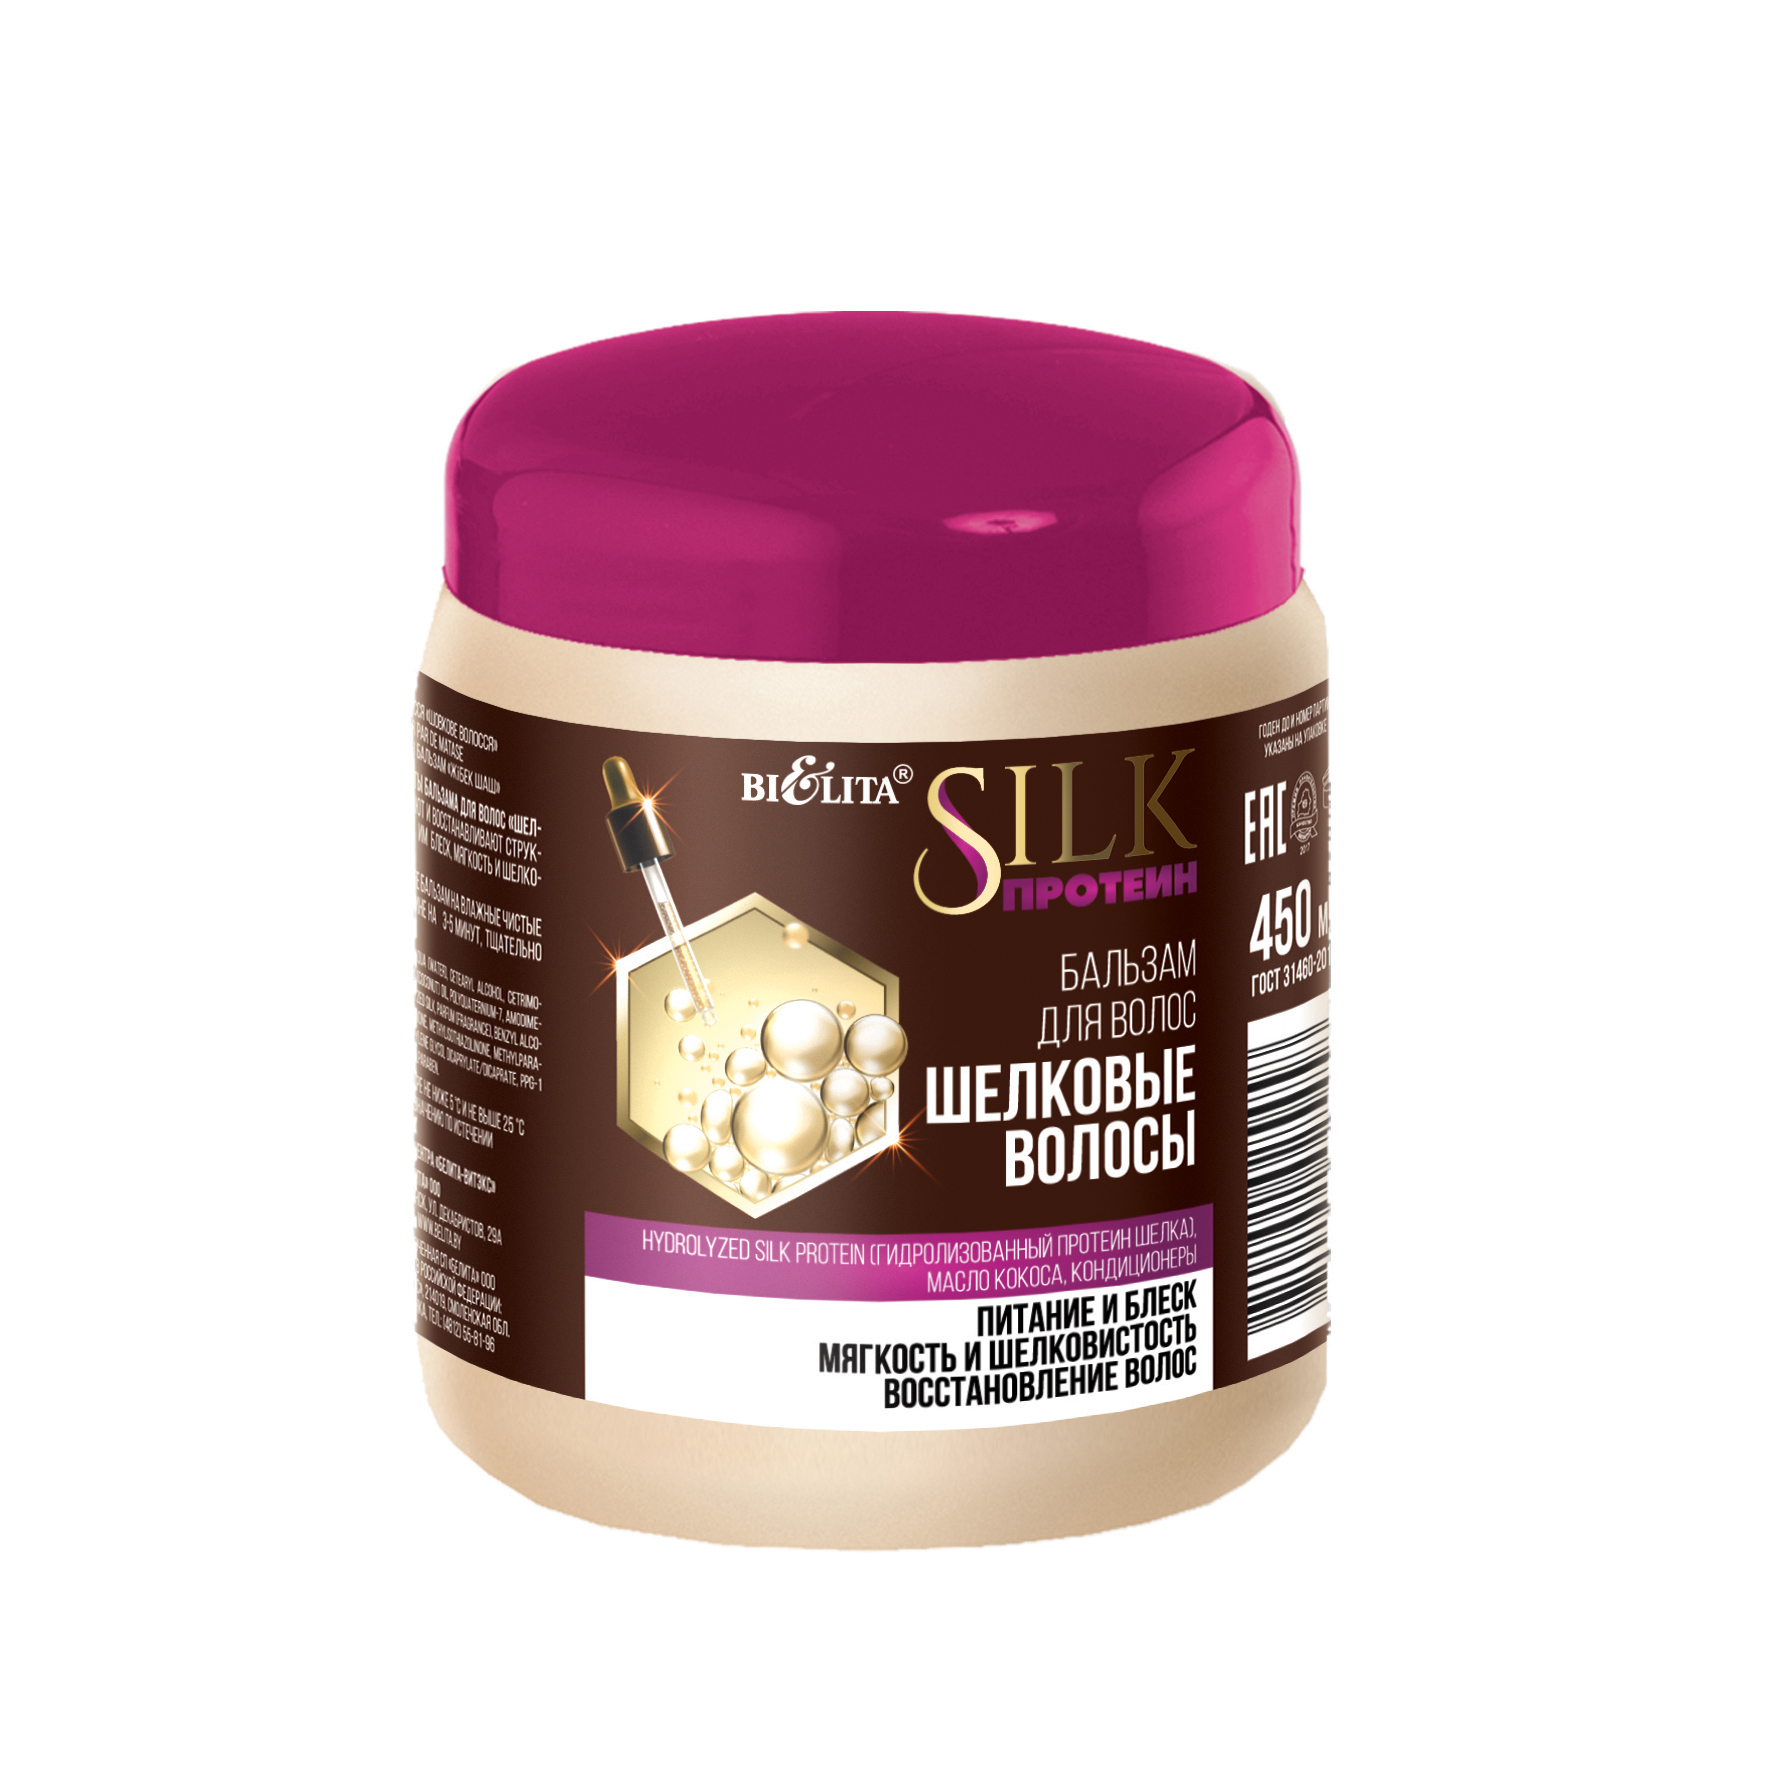 Silk-БАЛЬЗАМ для волос "Шелковые волосы" 450 мл, SILK протеин